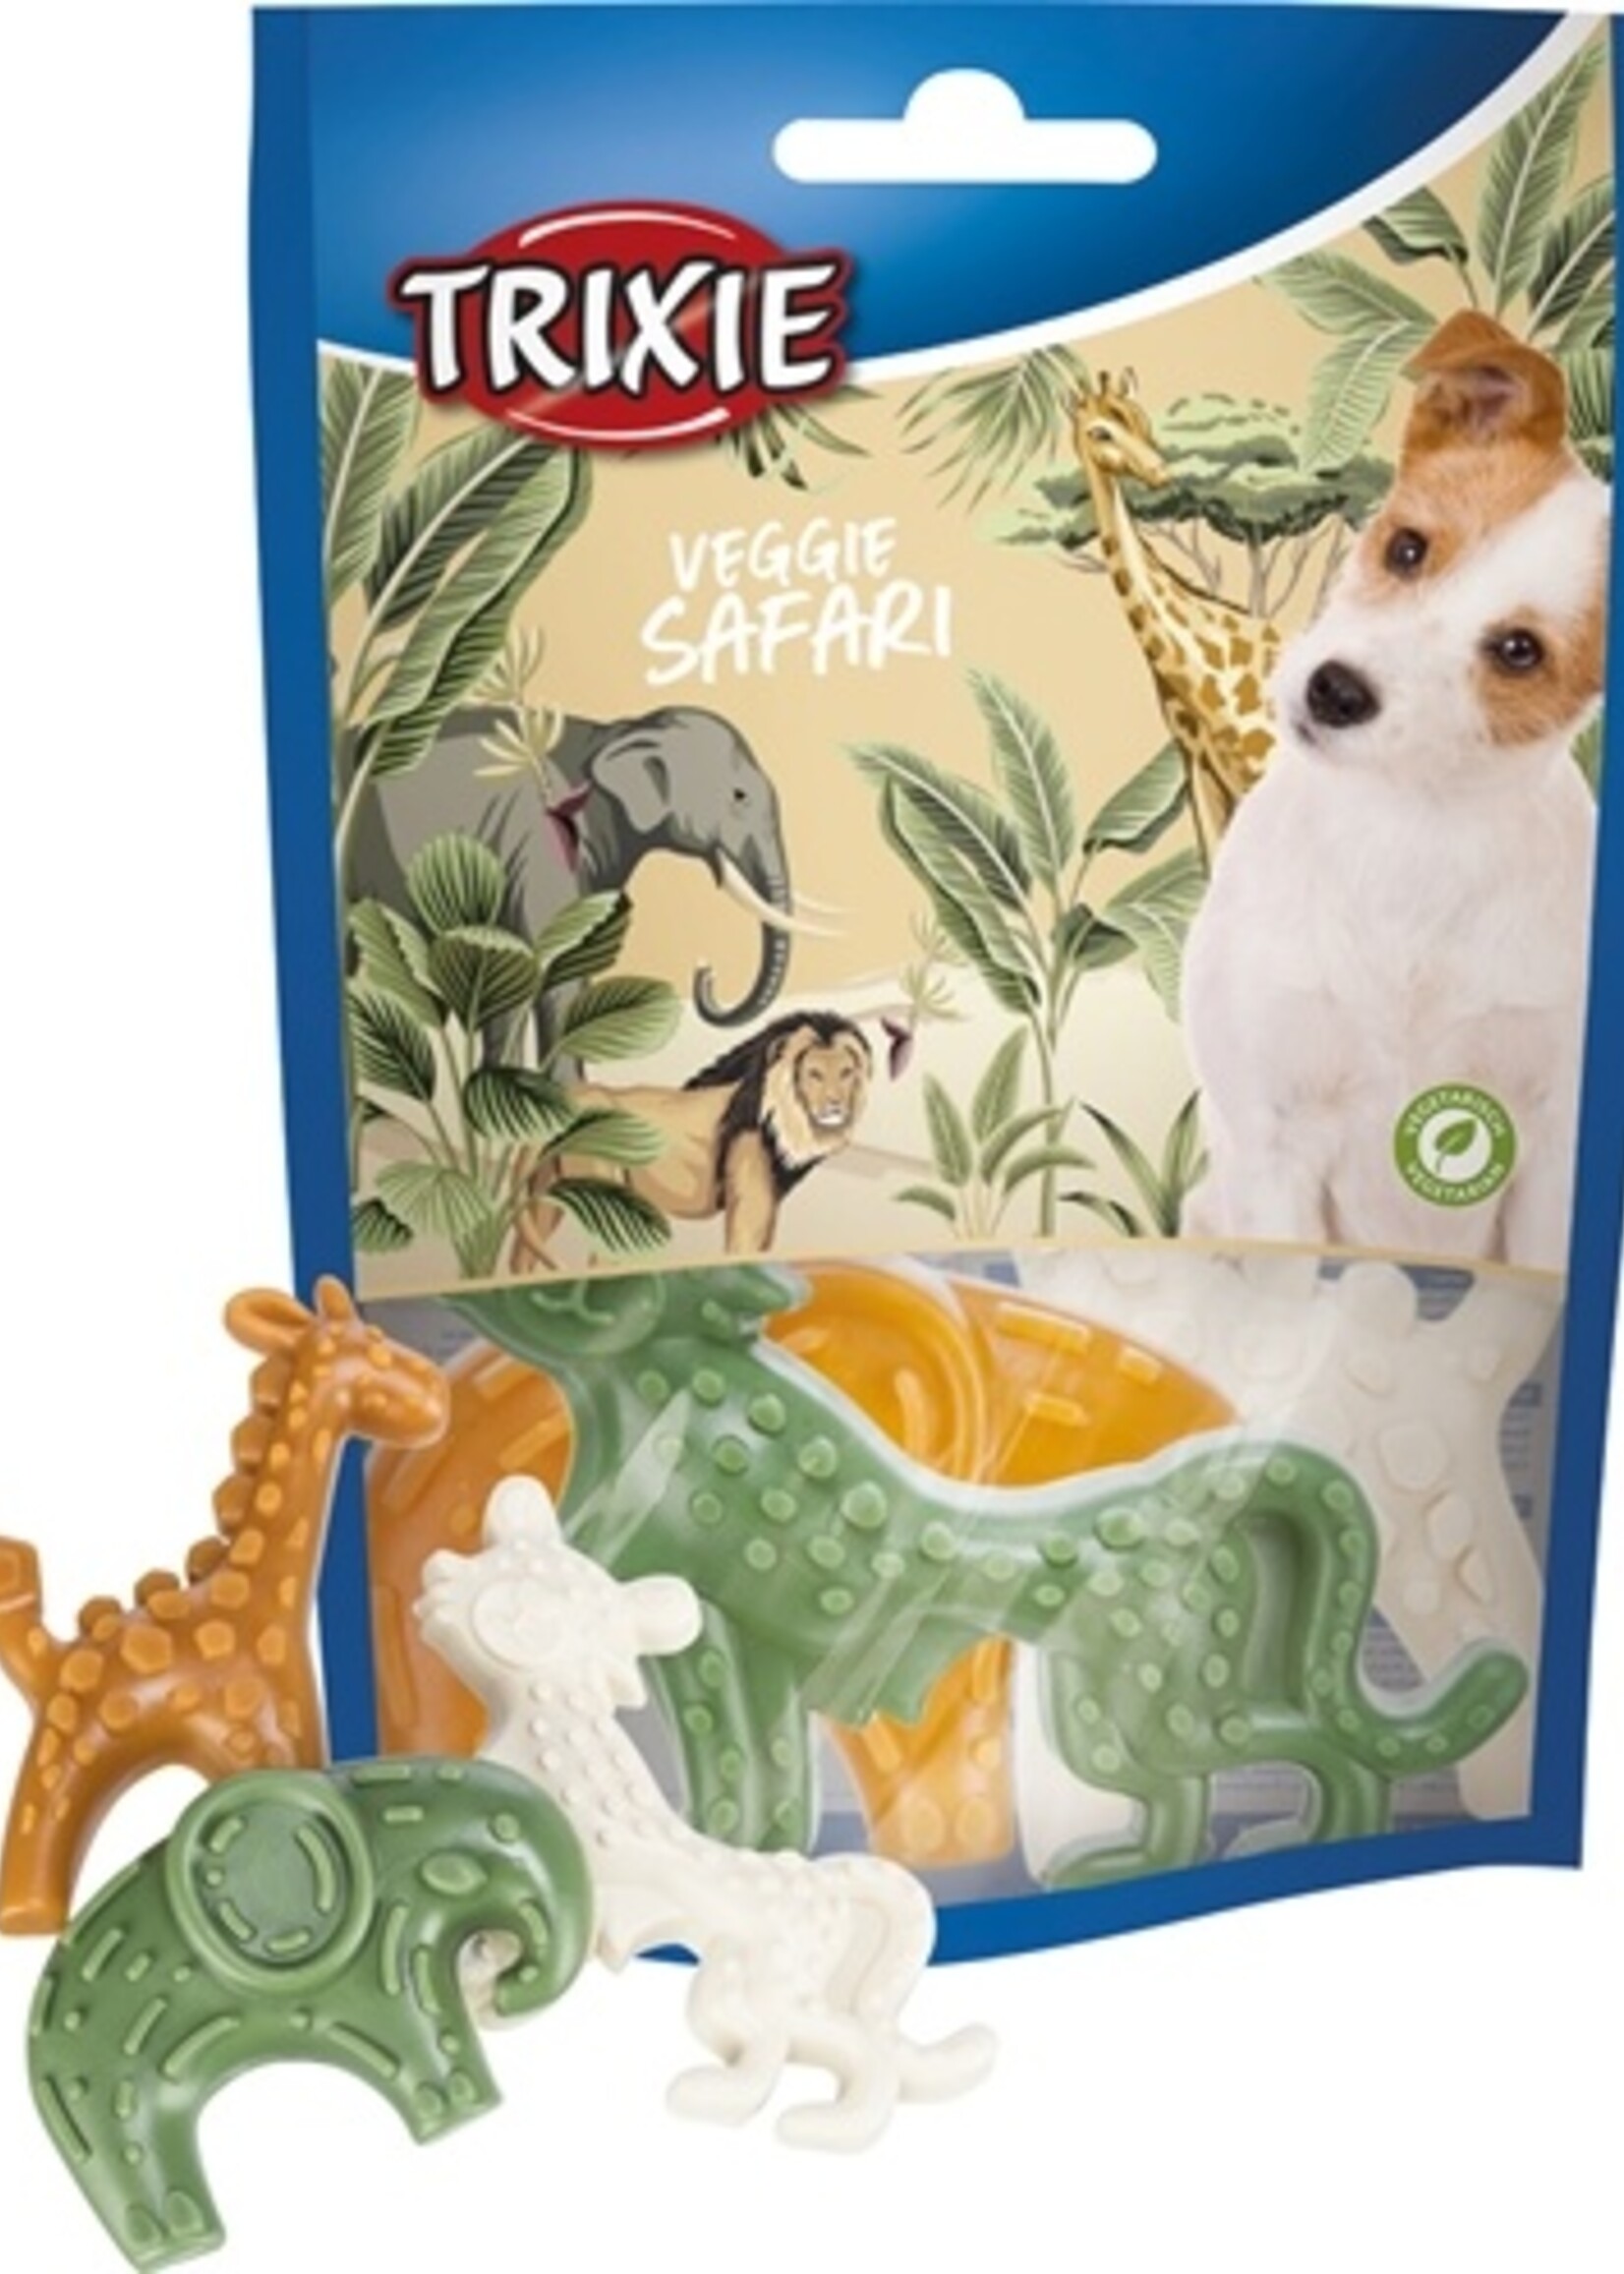 Trixie Trixie veggie safari